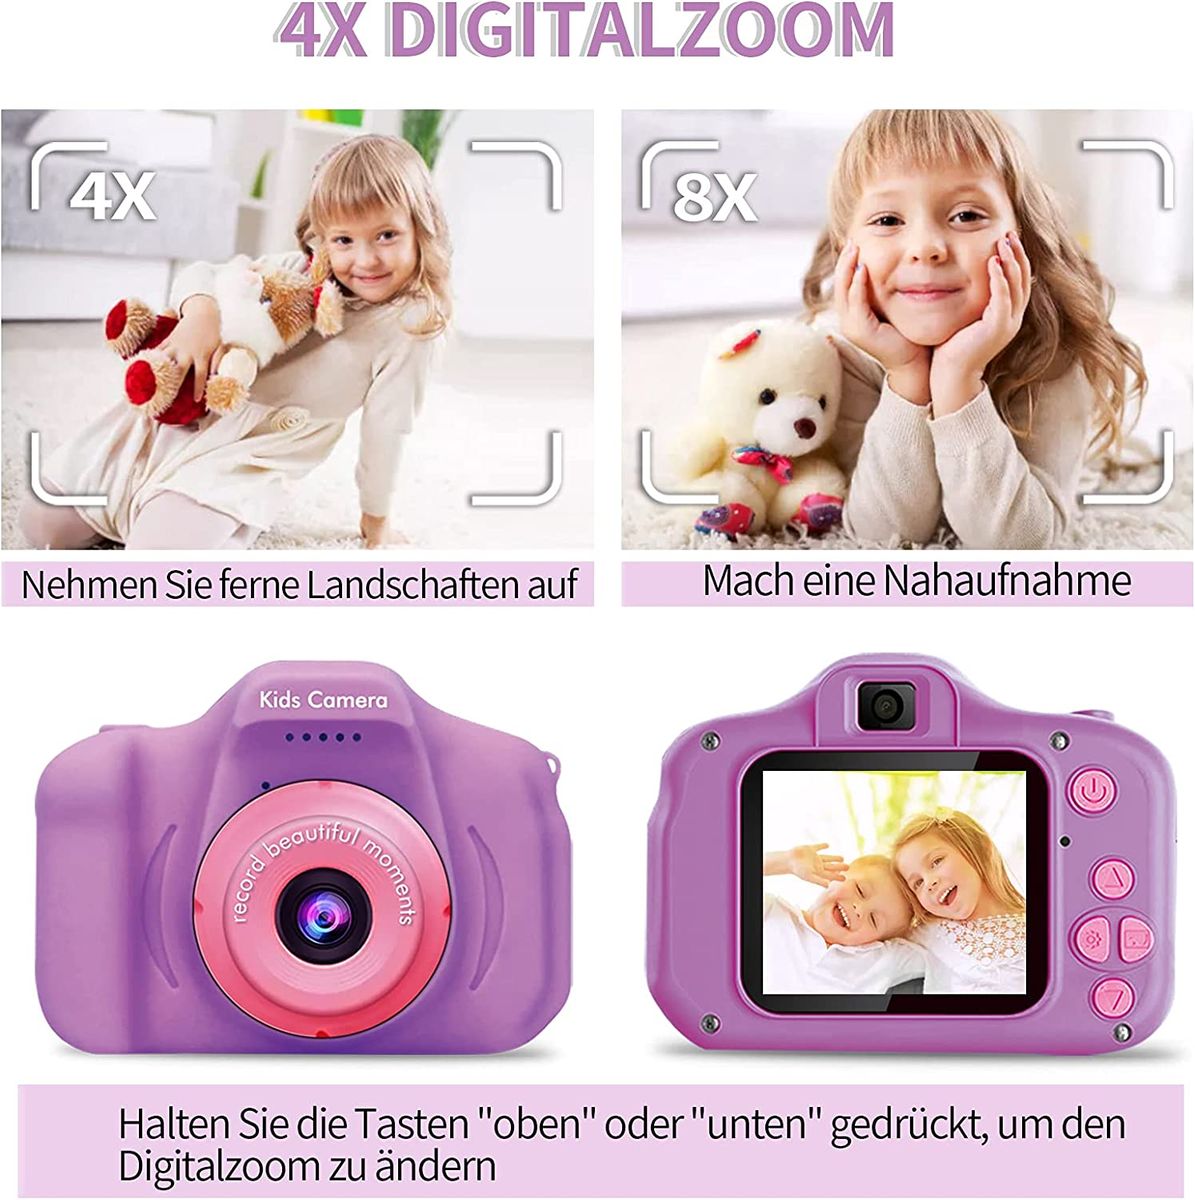 YOKISS Kinderkamera, Kamera Kinder für 3 bis 12 Jahre Alter Jungen und Mädchen, 2,0 Zoll Digitalkamera Kinder, 1080P HD/32G TF-Karte, Fotoapparat Kinder Geburtstag - Violett purple